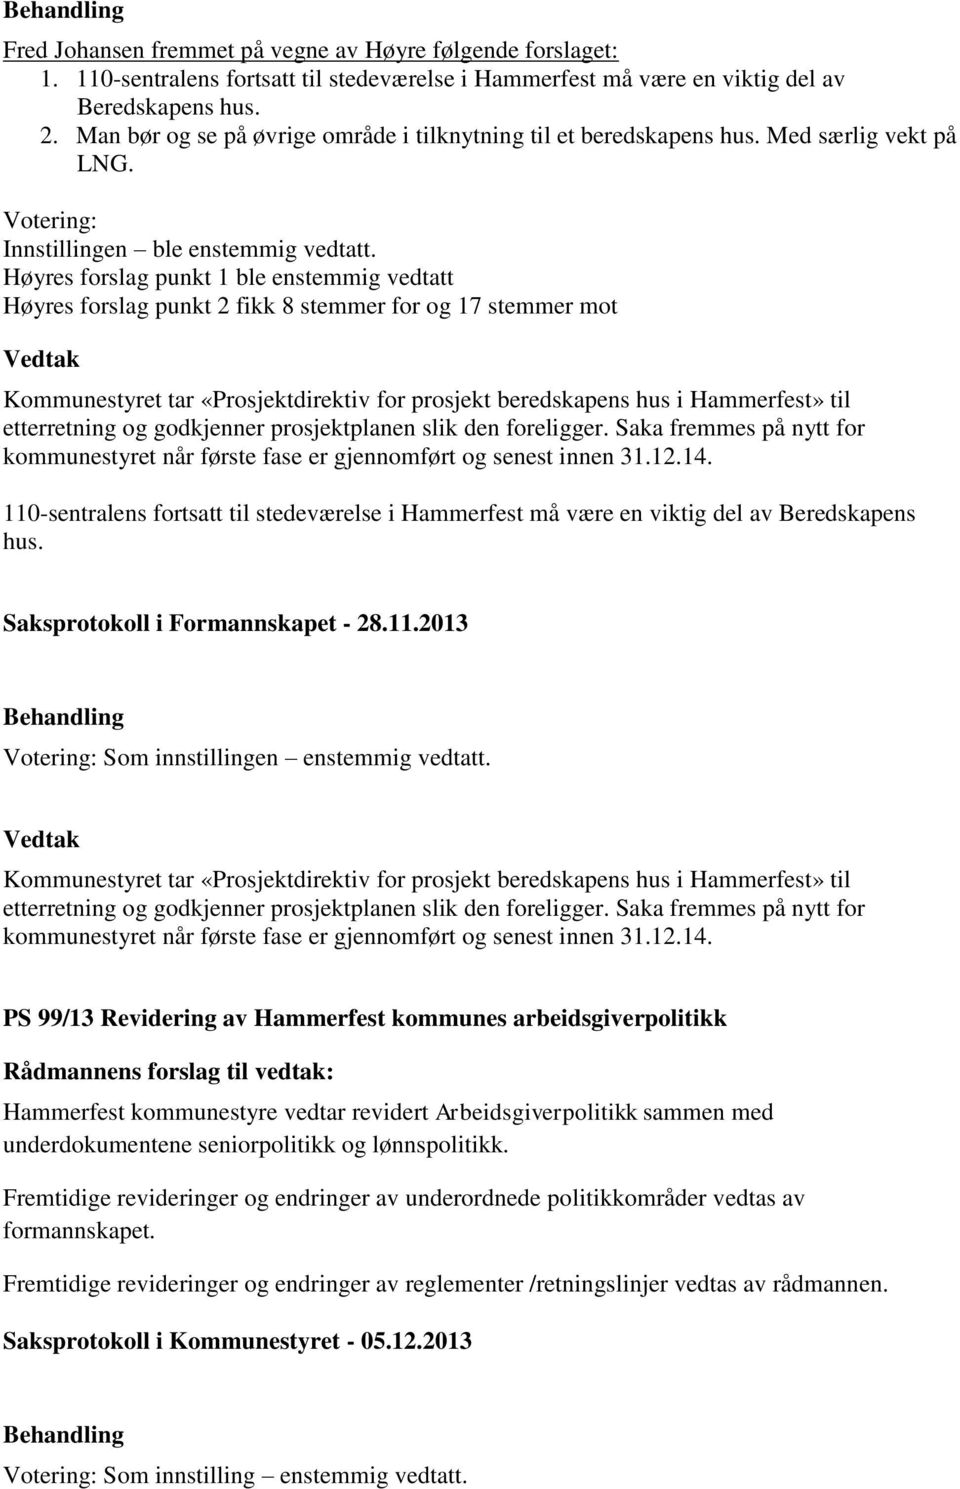 Høyres forslag punkt 1 ble enstemmig vedtatt Høyres forslag punkt 2 fikk 8 stemmer for og 17 stemmer mot Kommunestyret tar «Prosjektdirektiv for prosjekt beredskapens hus i Hammerfest» til